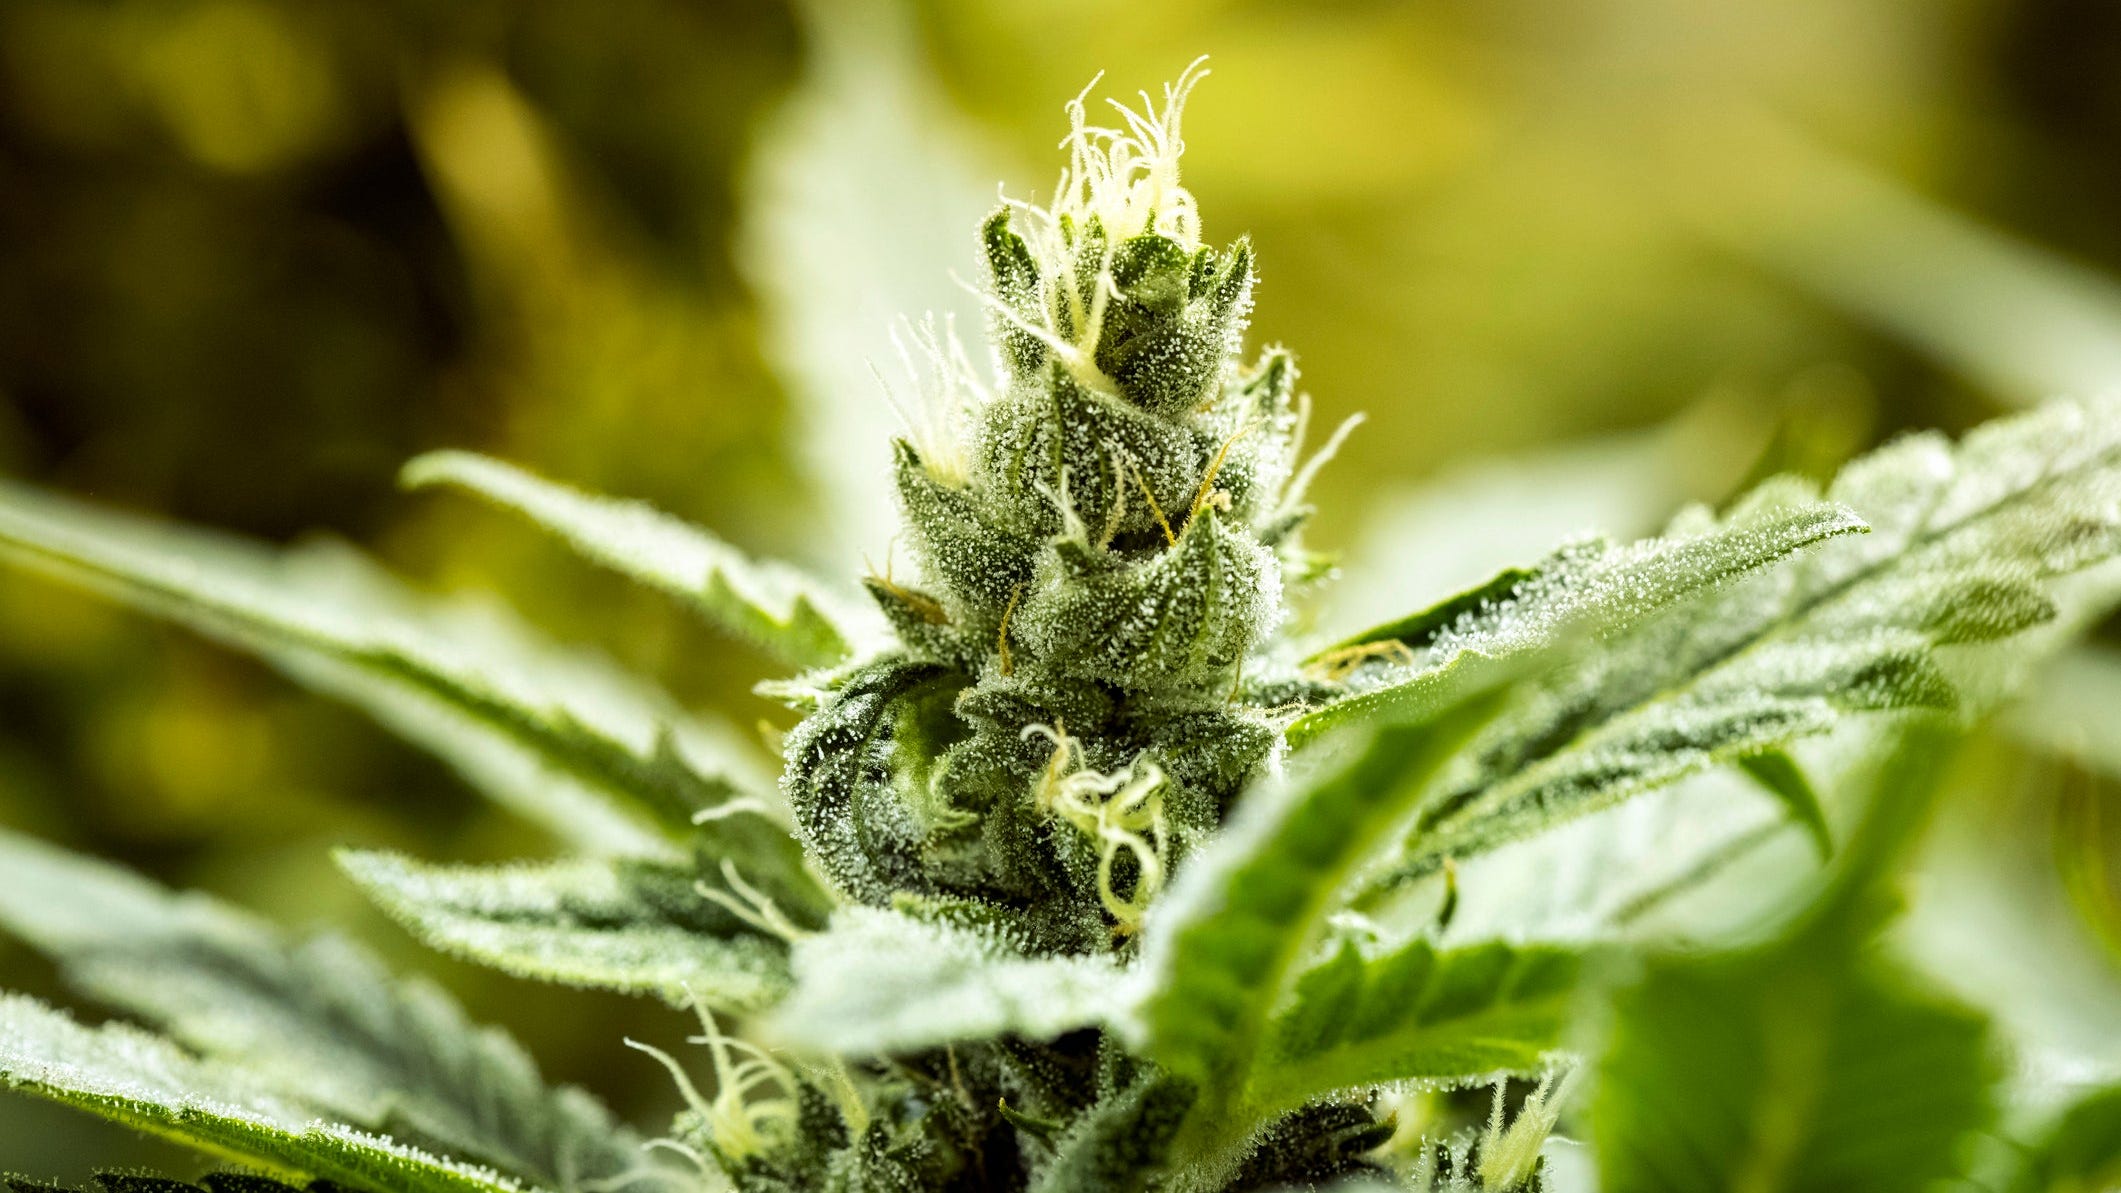 Marknaden för medicinsk cannabis växer kraftigt